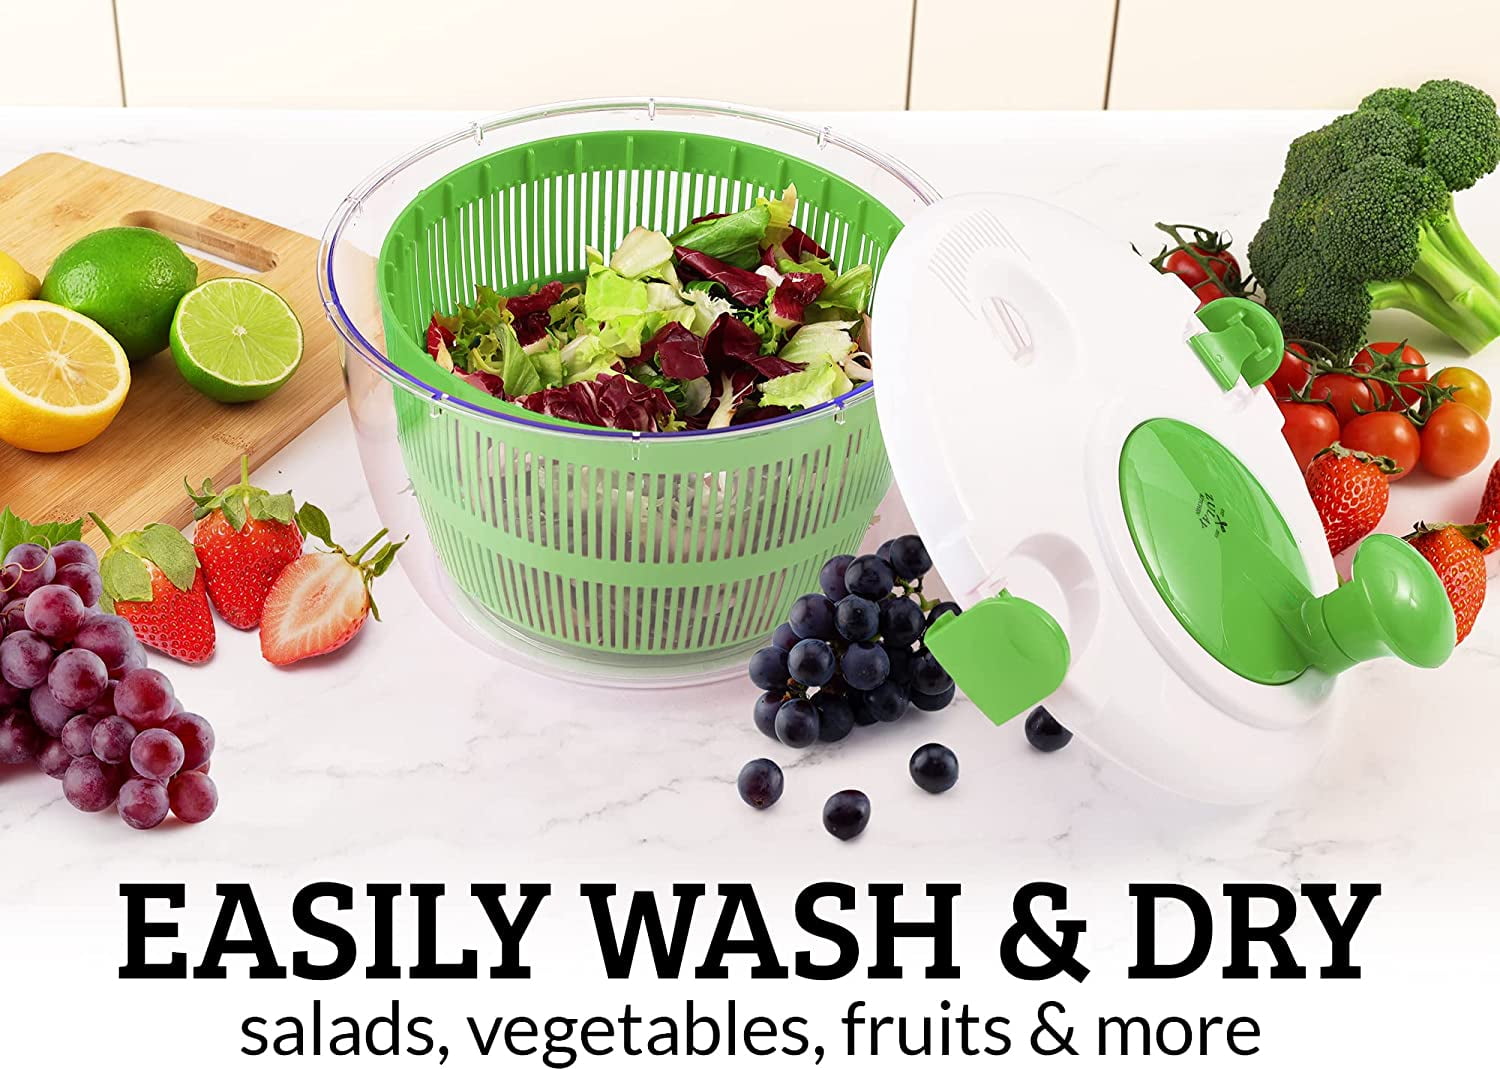 Buy your deluxe salad spinner online ┃